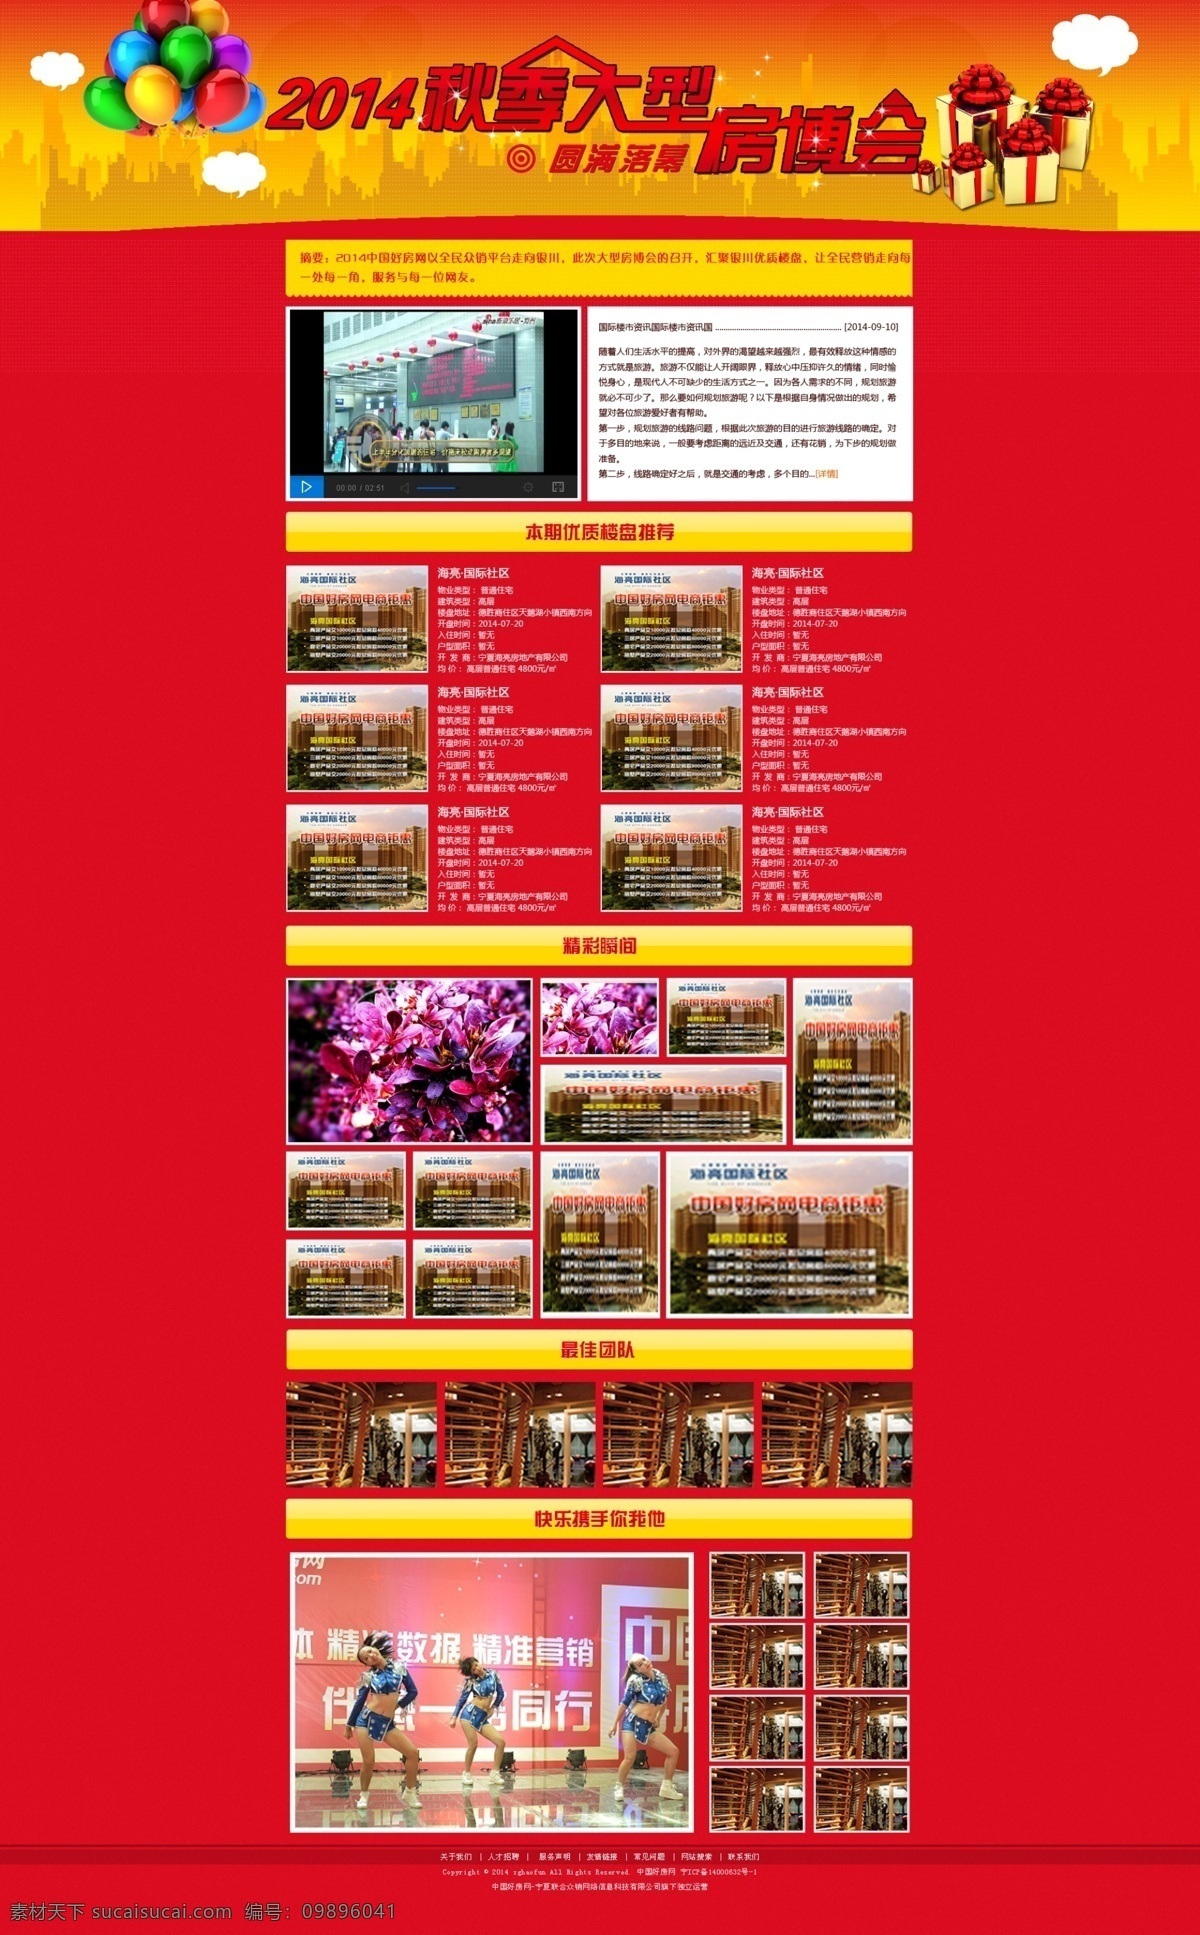 房 博 会 网页 专题 红色 喜庆 视频 框 活动 礼物礼品 楼房子剪影 气球